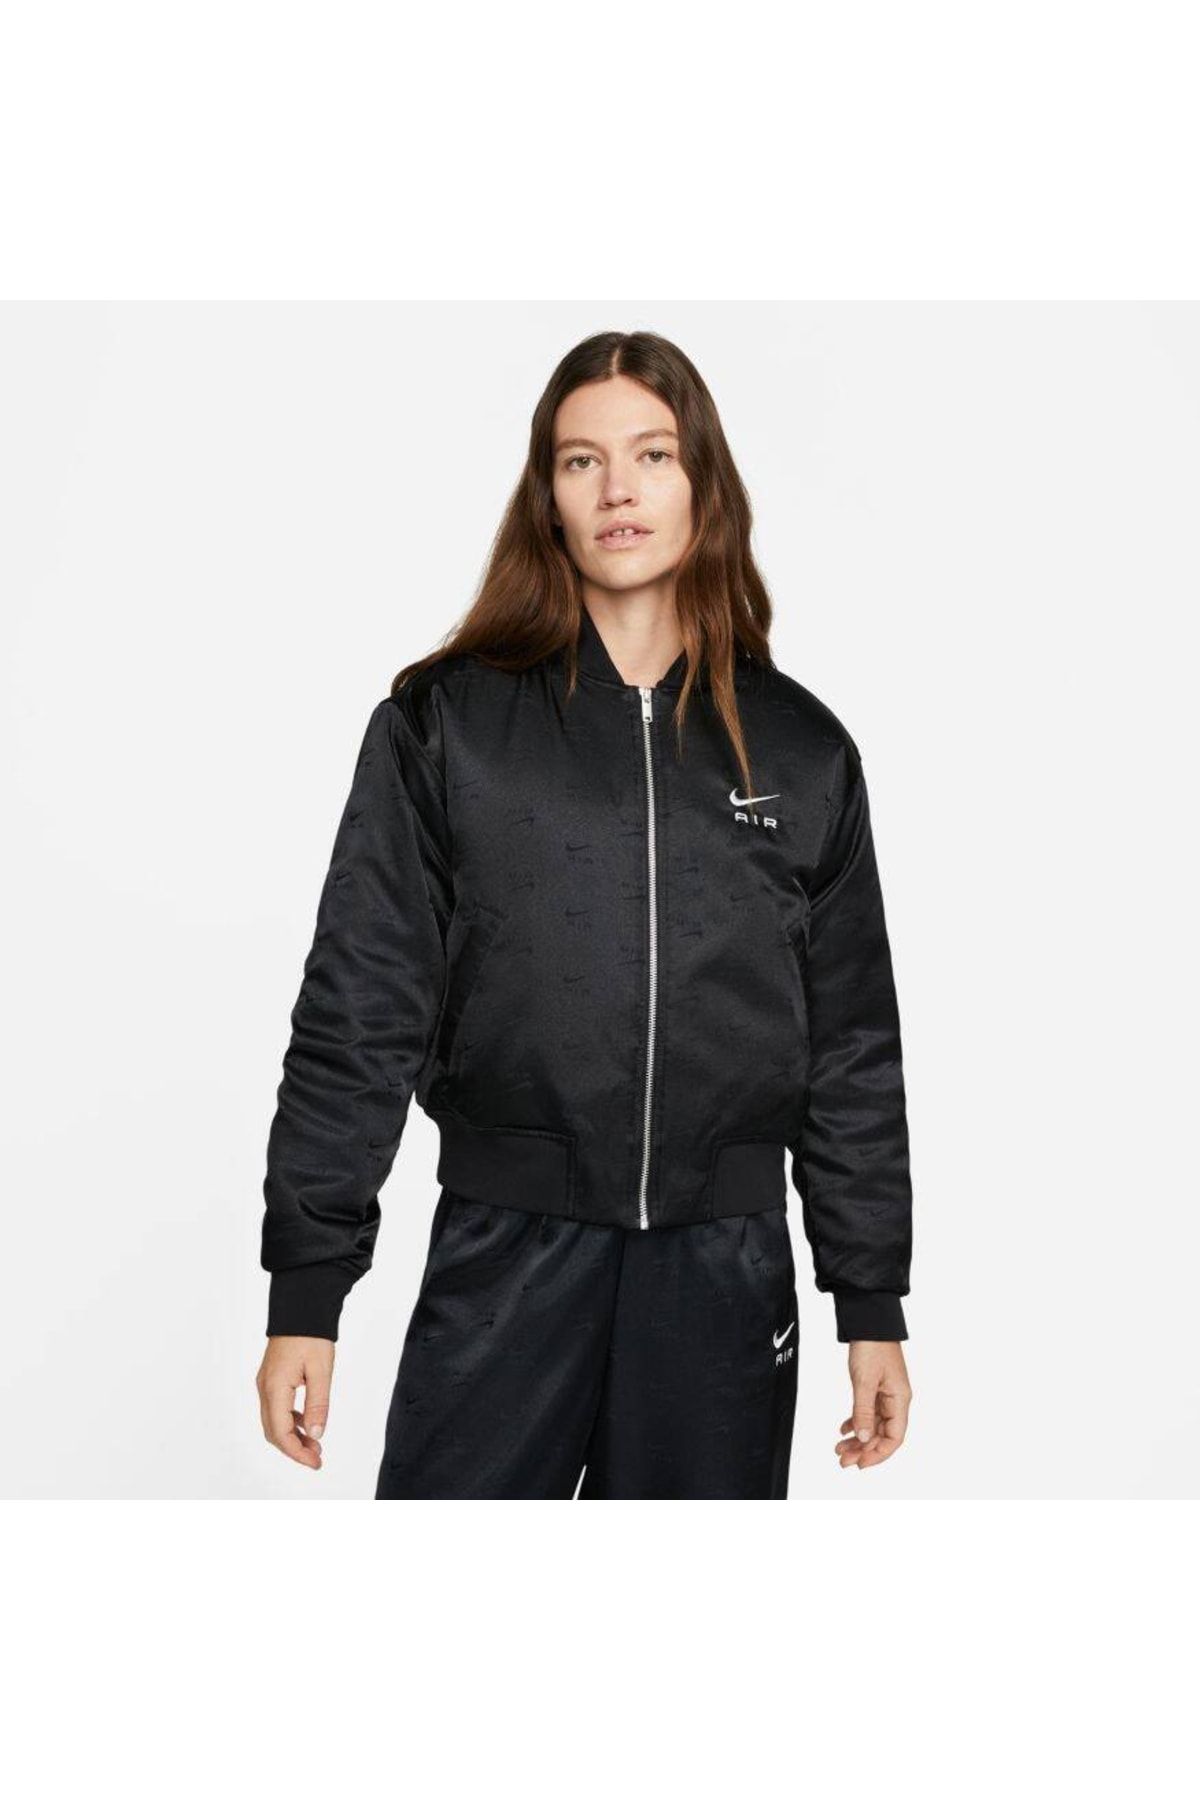 Nike Sportswear Air Bomber Jacket Kadın Siyah Renk Ceket Ve Yağmurluk